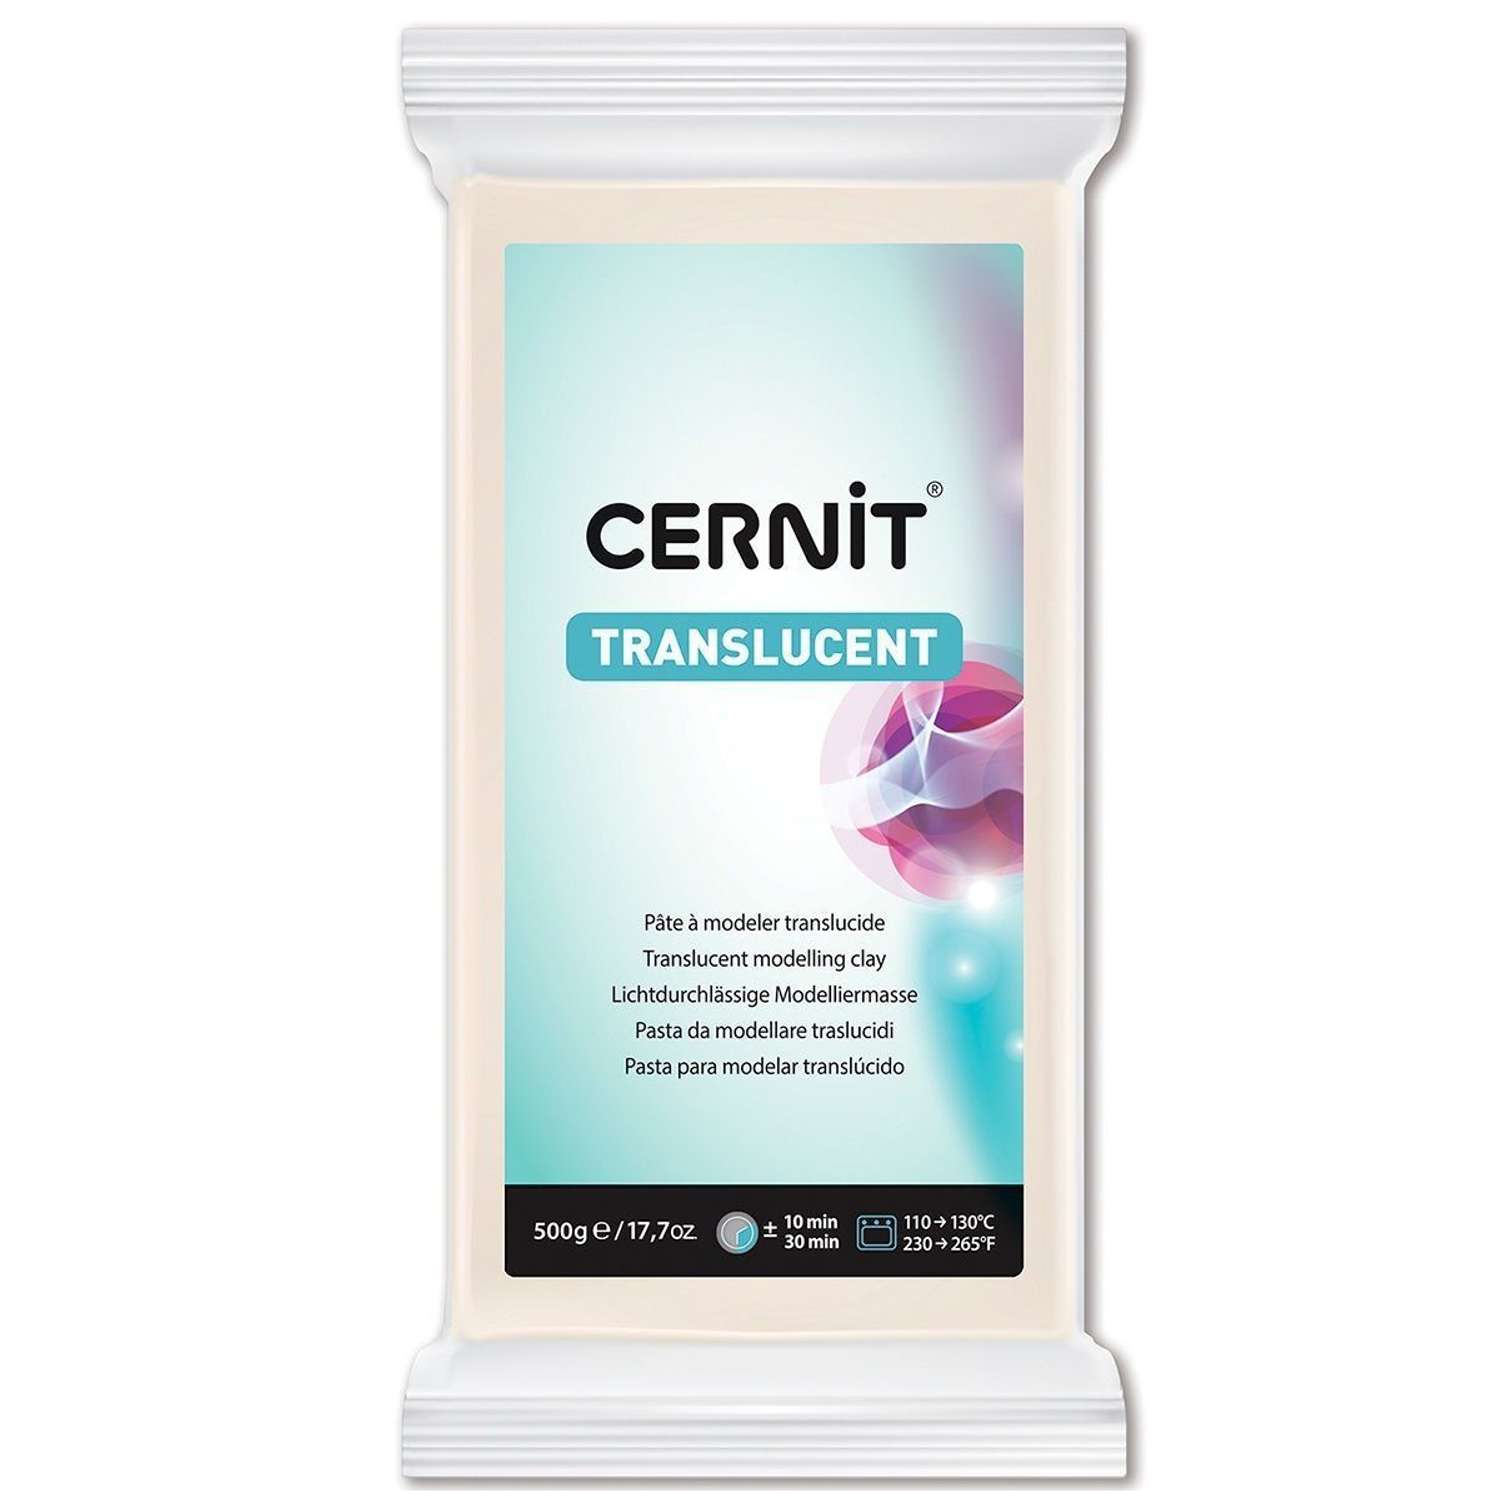 Полимерная глина Cernit пластика запекаемая Цернит translucent прозрачный 500 гр CE0920500 - фото 6